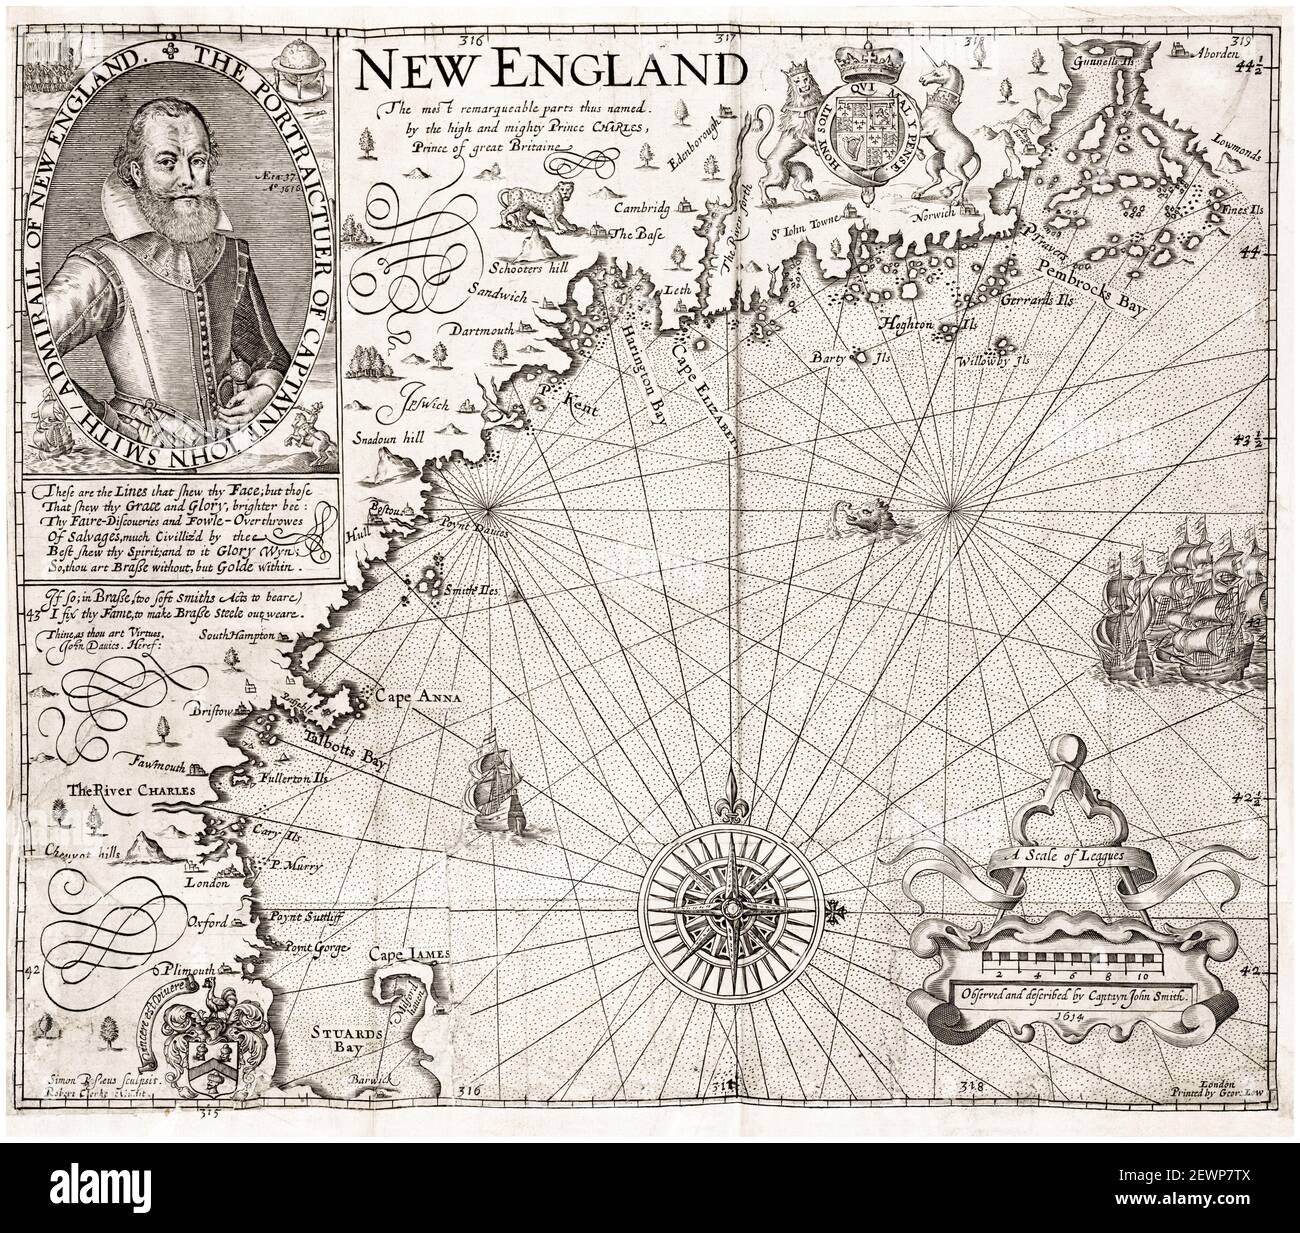 Karte von Virginia, Neuengland und den Sommerinseln aus dem frühen 17th. Jahrhundert, mit einem Porträt von John Smith, Admiral von Neuengland, Karte nach John Smith, 1624 Stockfoto